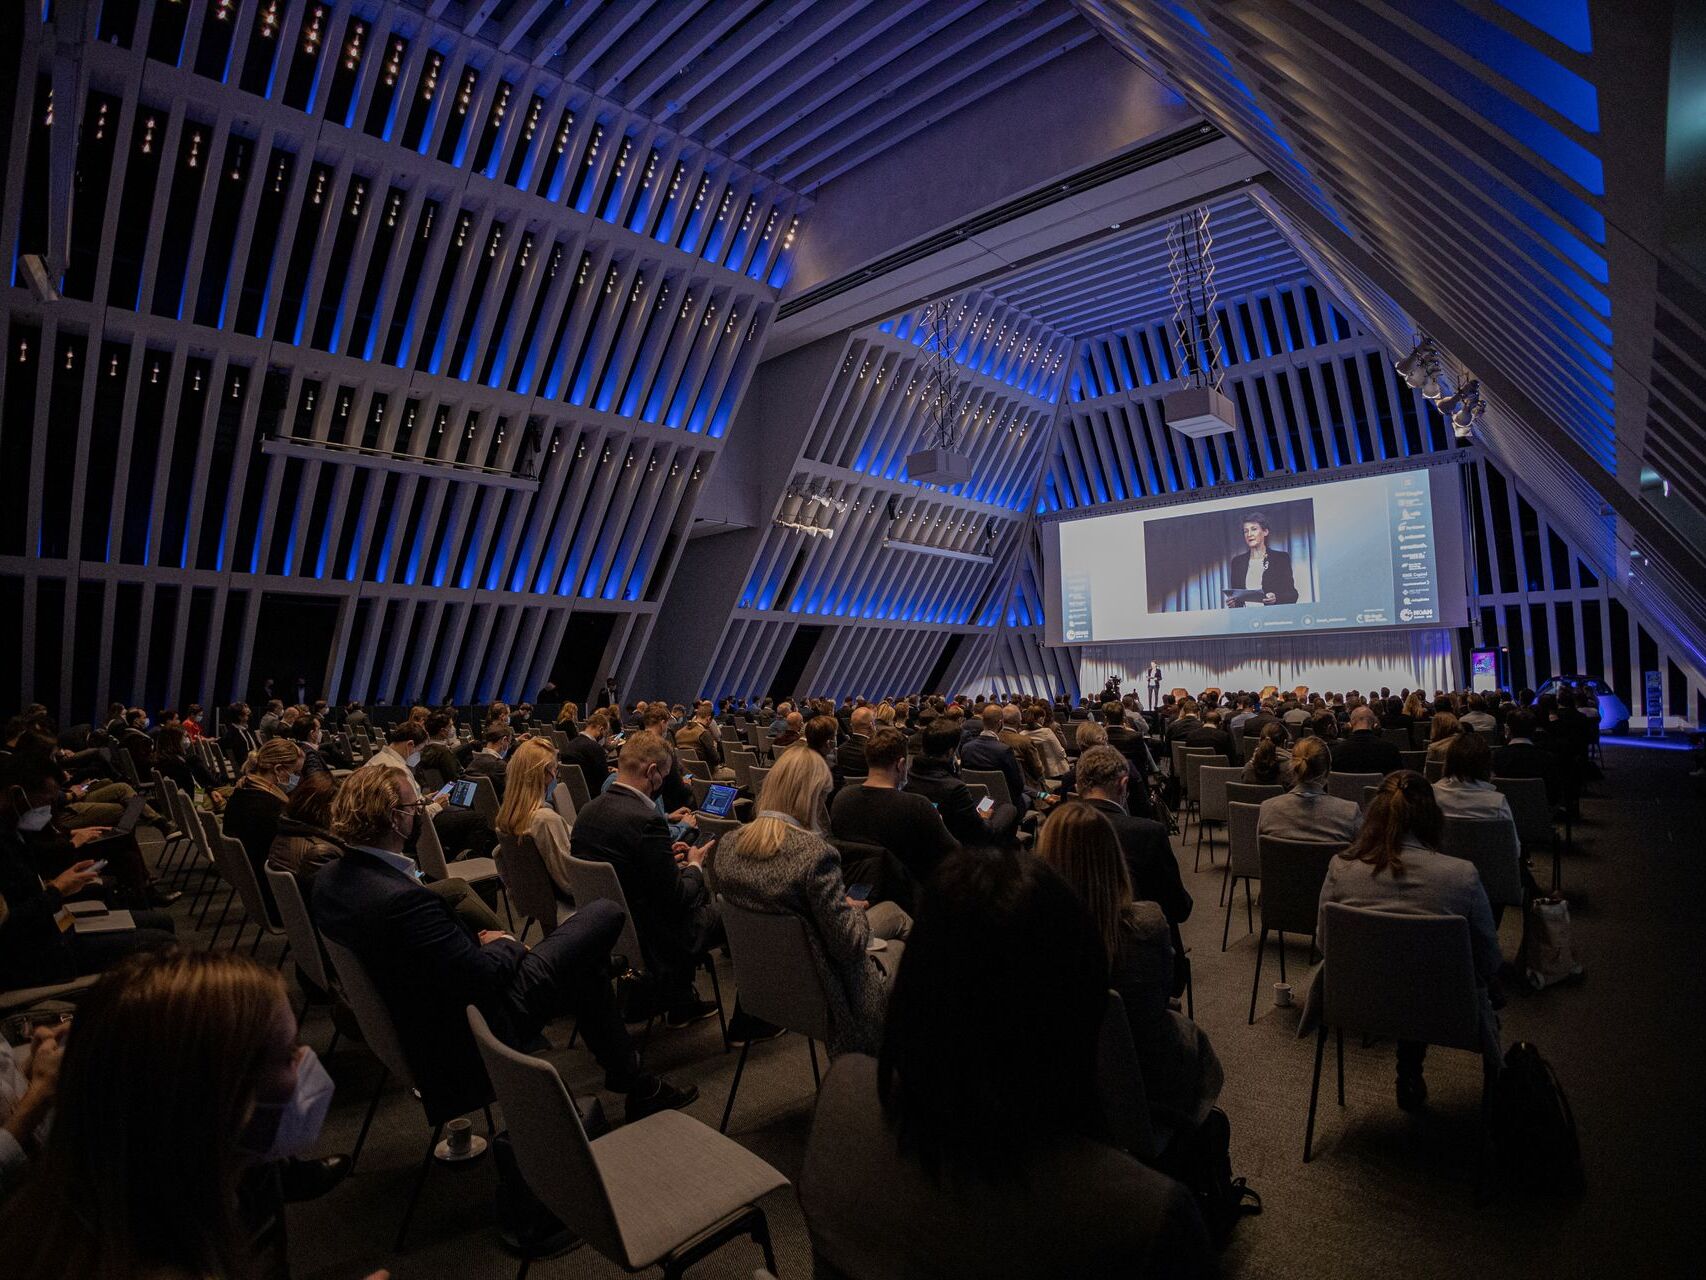 ຜູ້ຊົມແລະລໍາໂພງທີ່ນໍາສະເຫນີຢູ່ "The Circle" ໃນ Zurich ໃນເດືອນທັນວາ 6 ໃນໂອກາດຂອງມື້ທໍາອິດຂອງ "NOAH Conference" 2021: Simonetta Sommaruga, ຫົວຫນ້າກົມສິ່ງແວດລ້ອມ, ການຂົນສົ່ງ, ພະລັງງານແລະການສື່ສານຂອງລັດຖະບານກາງ (DETEC)